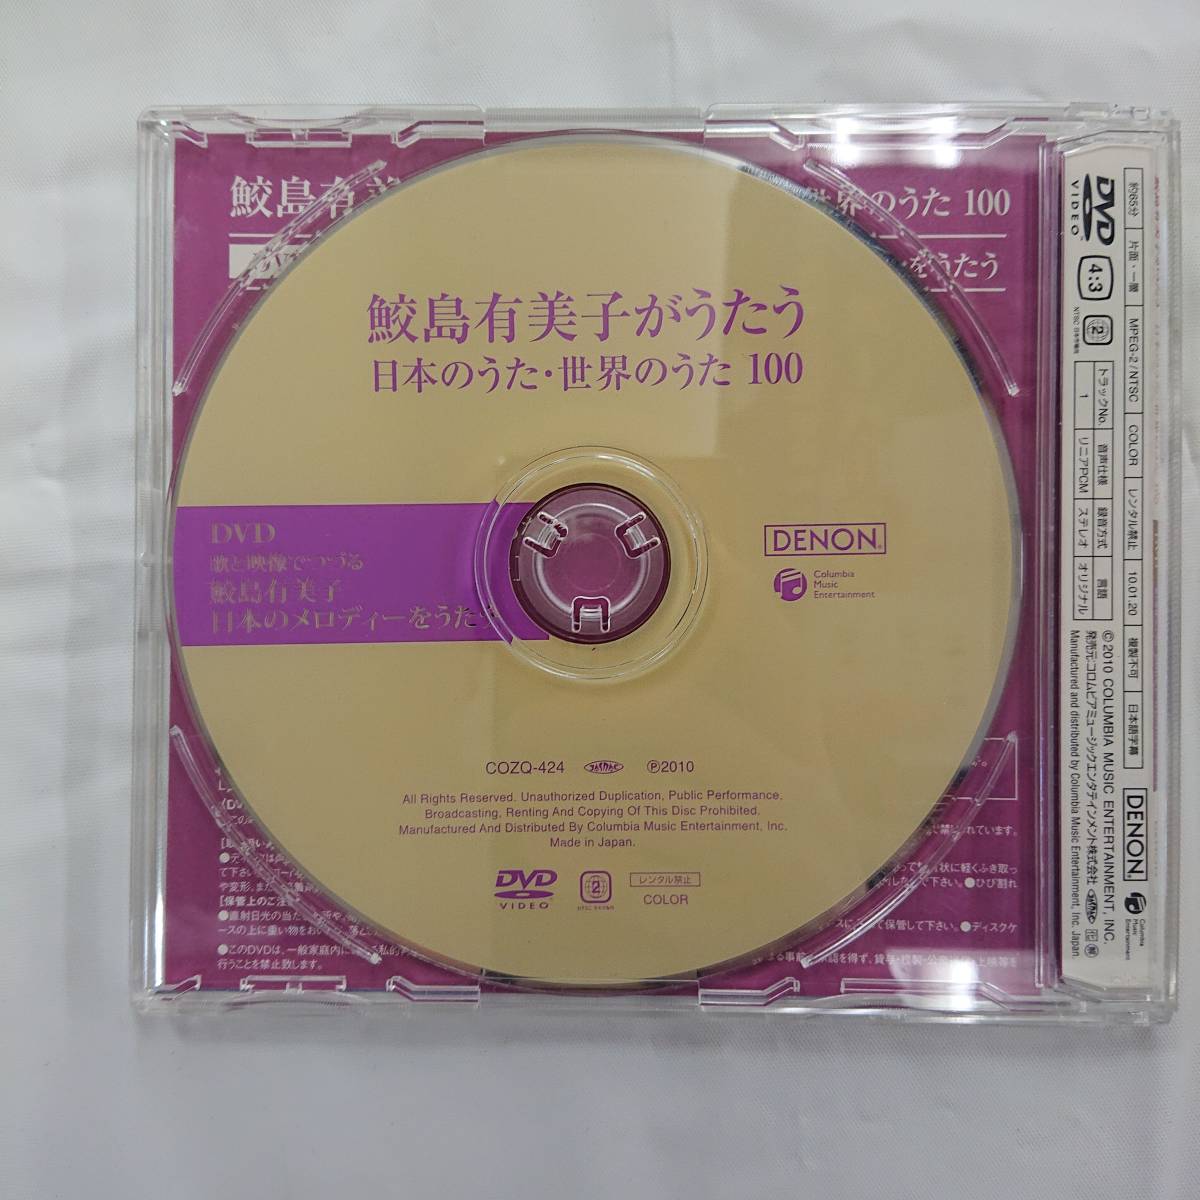 鮫島有美子がうたう 日本のうた 世界のうた100 5CD+1DVD COZQ-419→24 ...